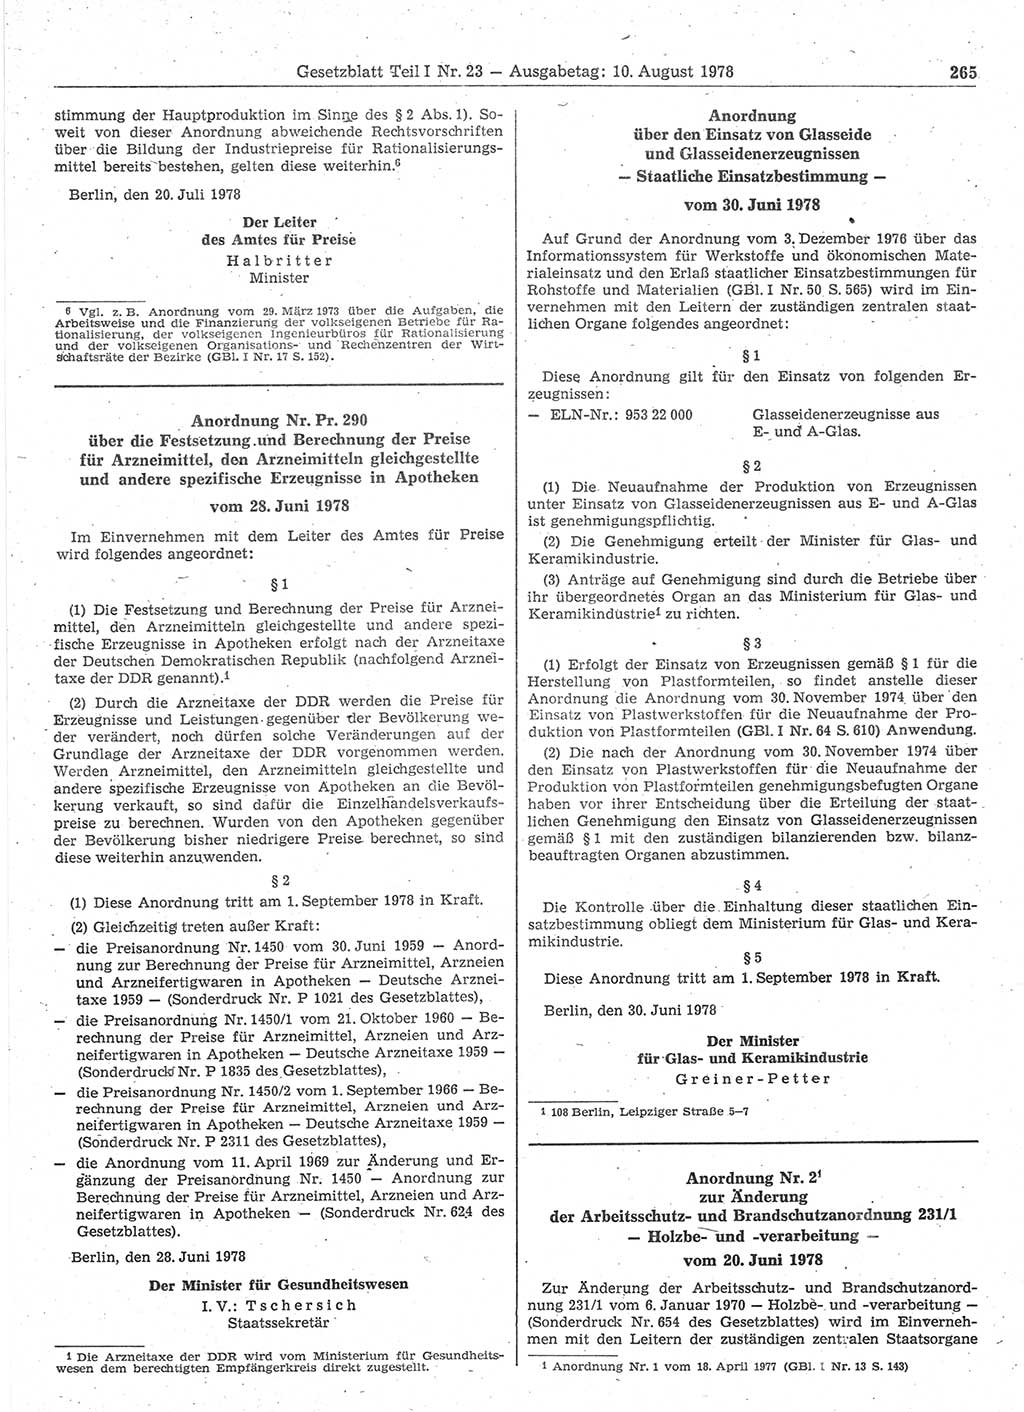 Gesetzblatt (GBl.) der Deutschen Demokratischen Republik (DDR) Teil Ⅰ 1978, Seite 265 (GBl. DDR Ⅰ 1978, S. 265)